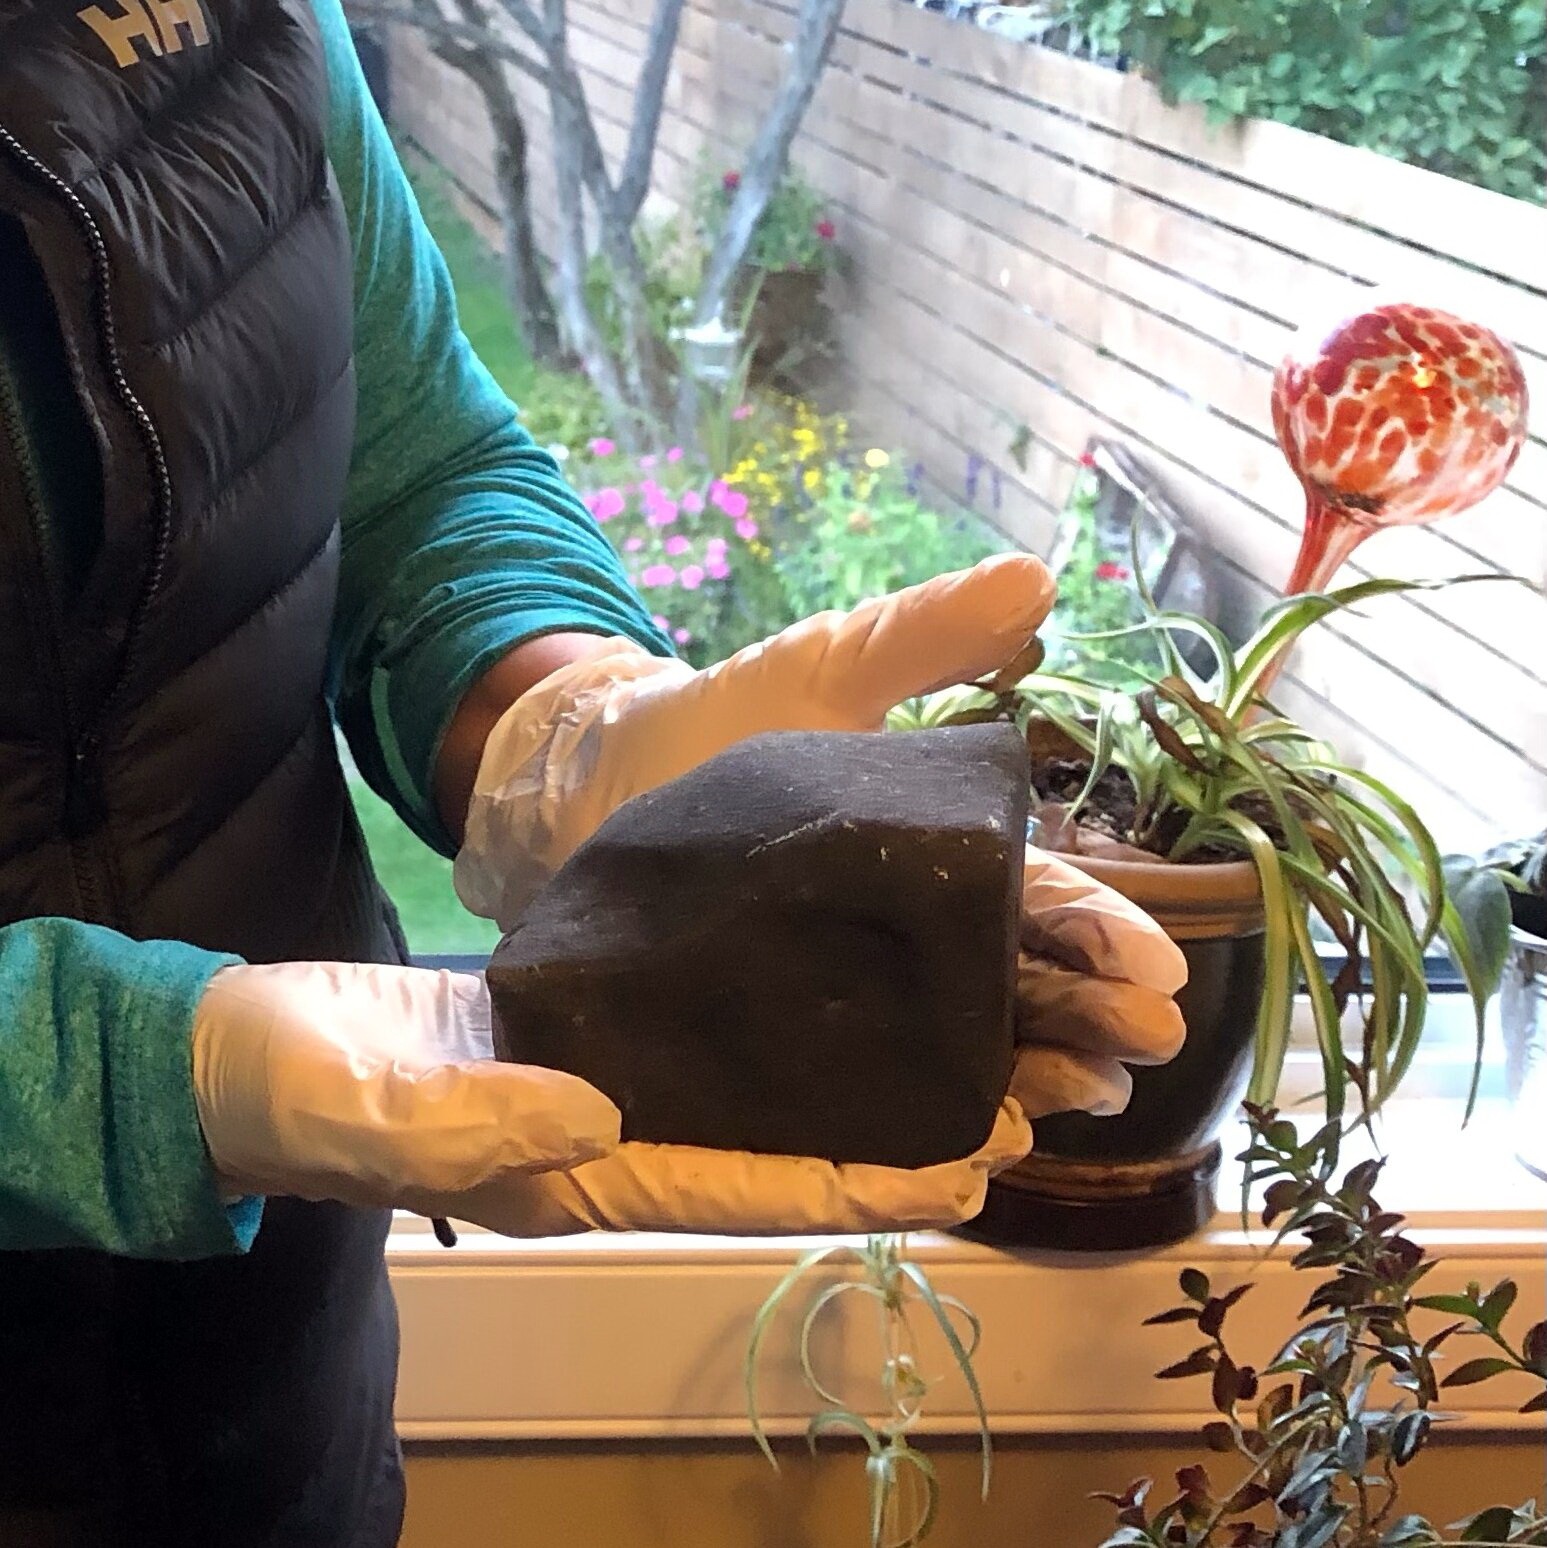 کشف شهاب سنگ در باغچه خانه زن فرانسوی